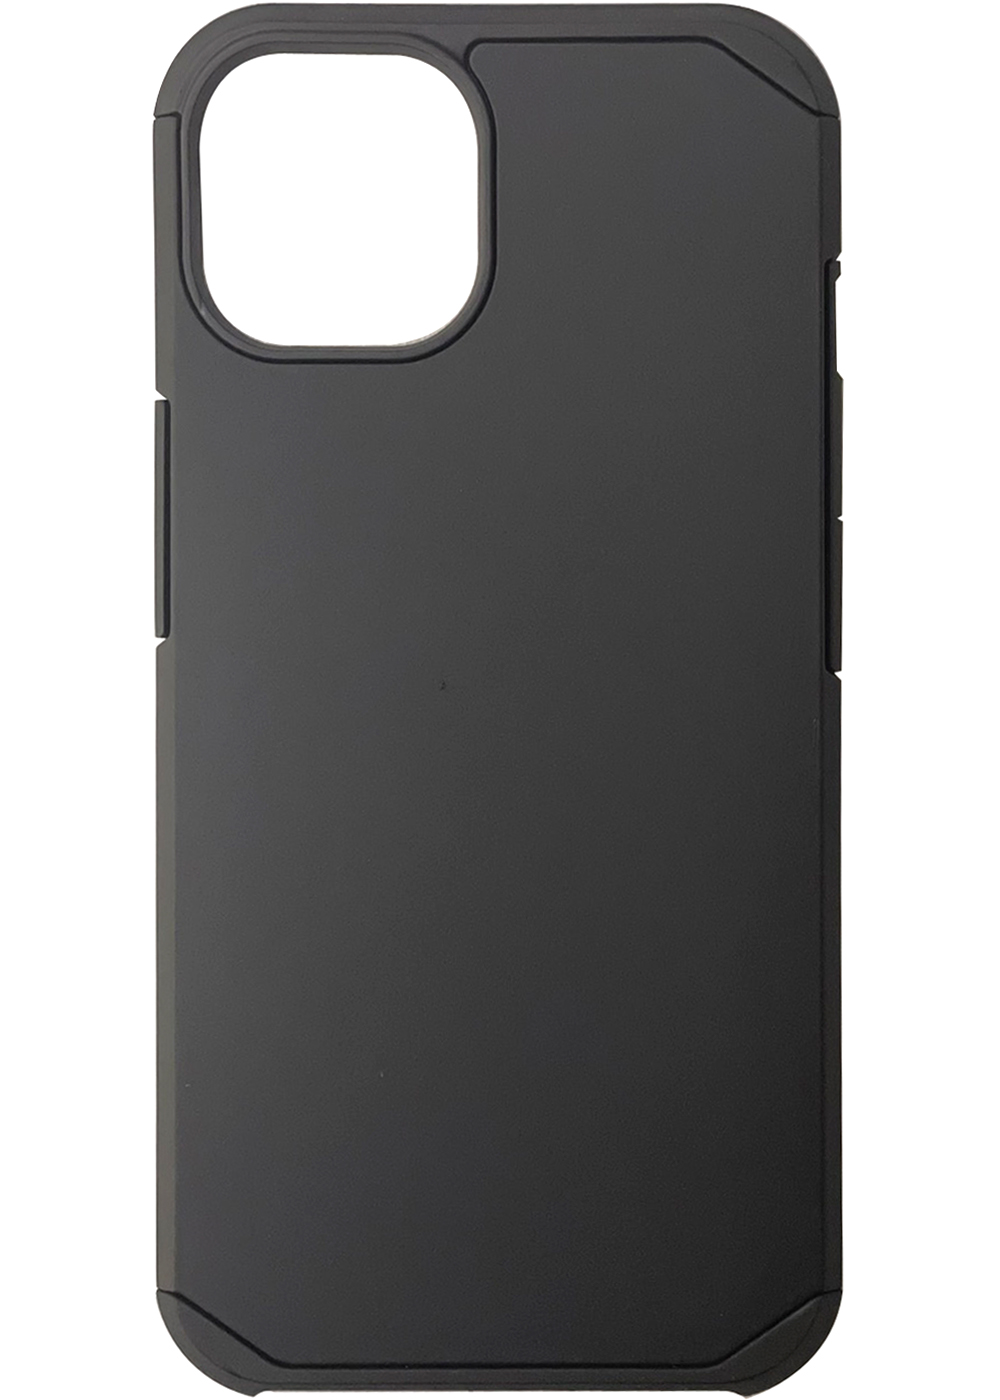 iPhone 12 Pro Max Slim Armor Case Black